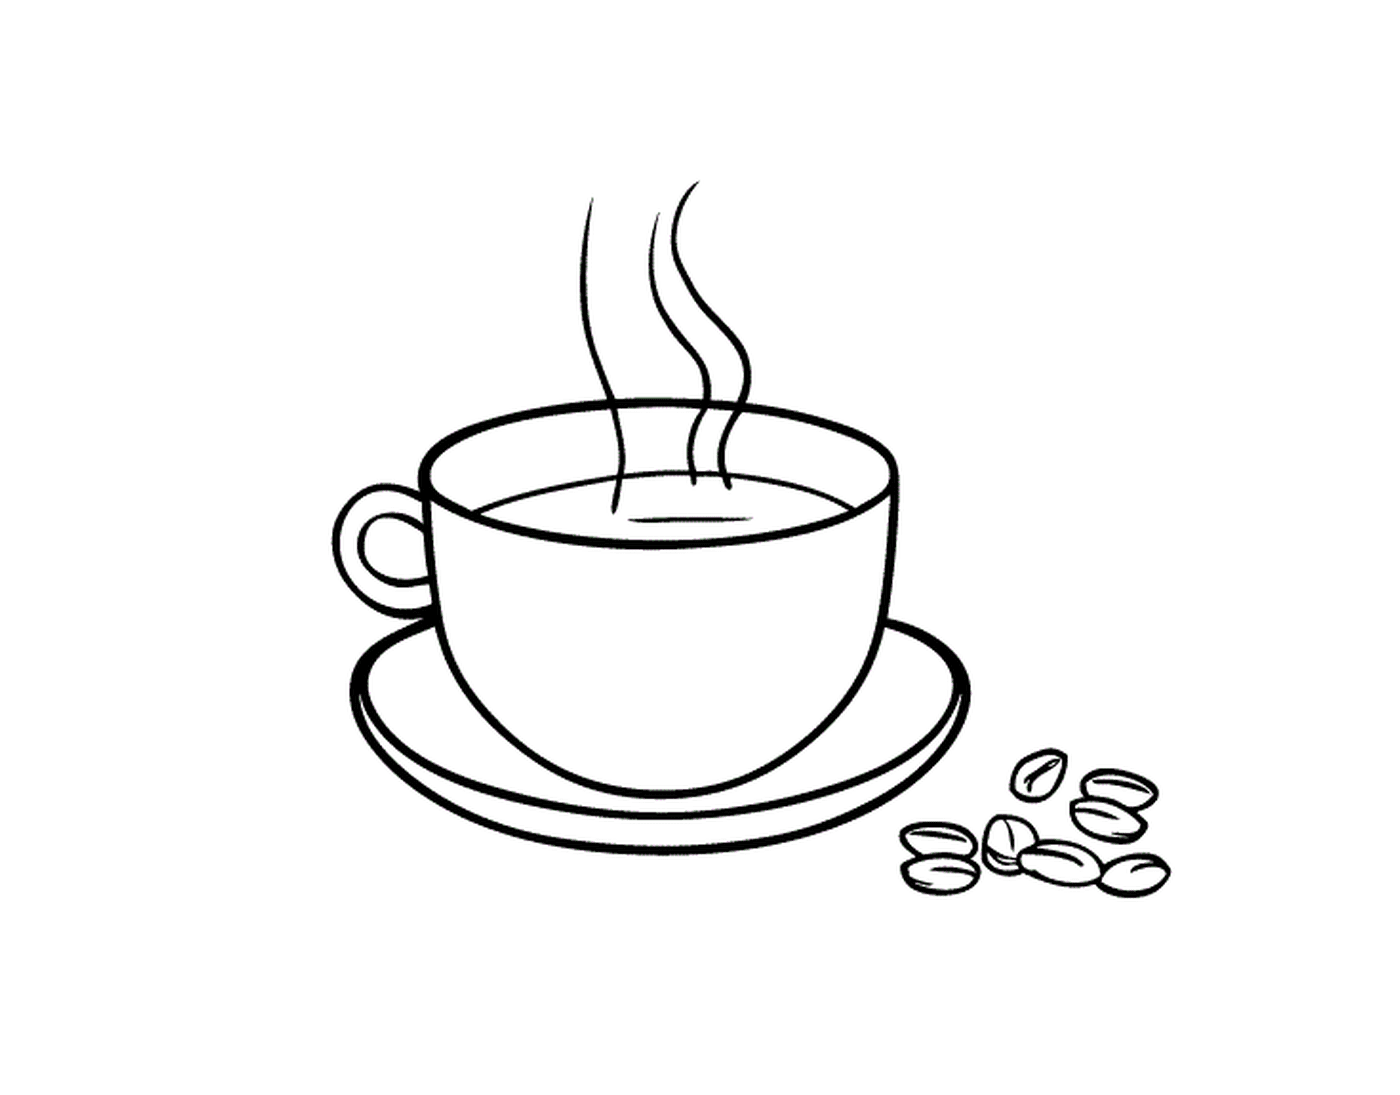  قهوة بنسبة 100 في المائة من العربية مع حبة قه 